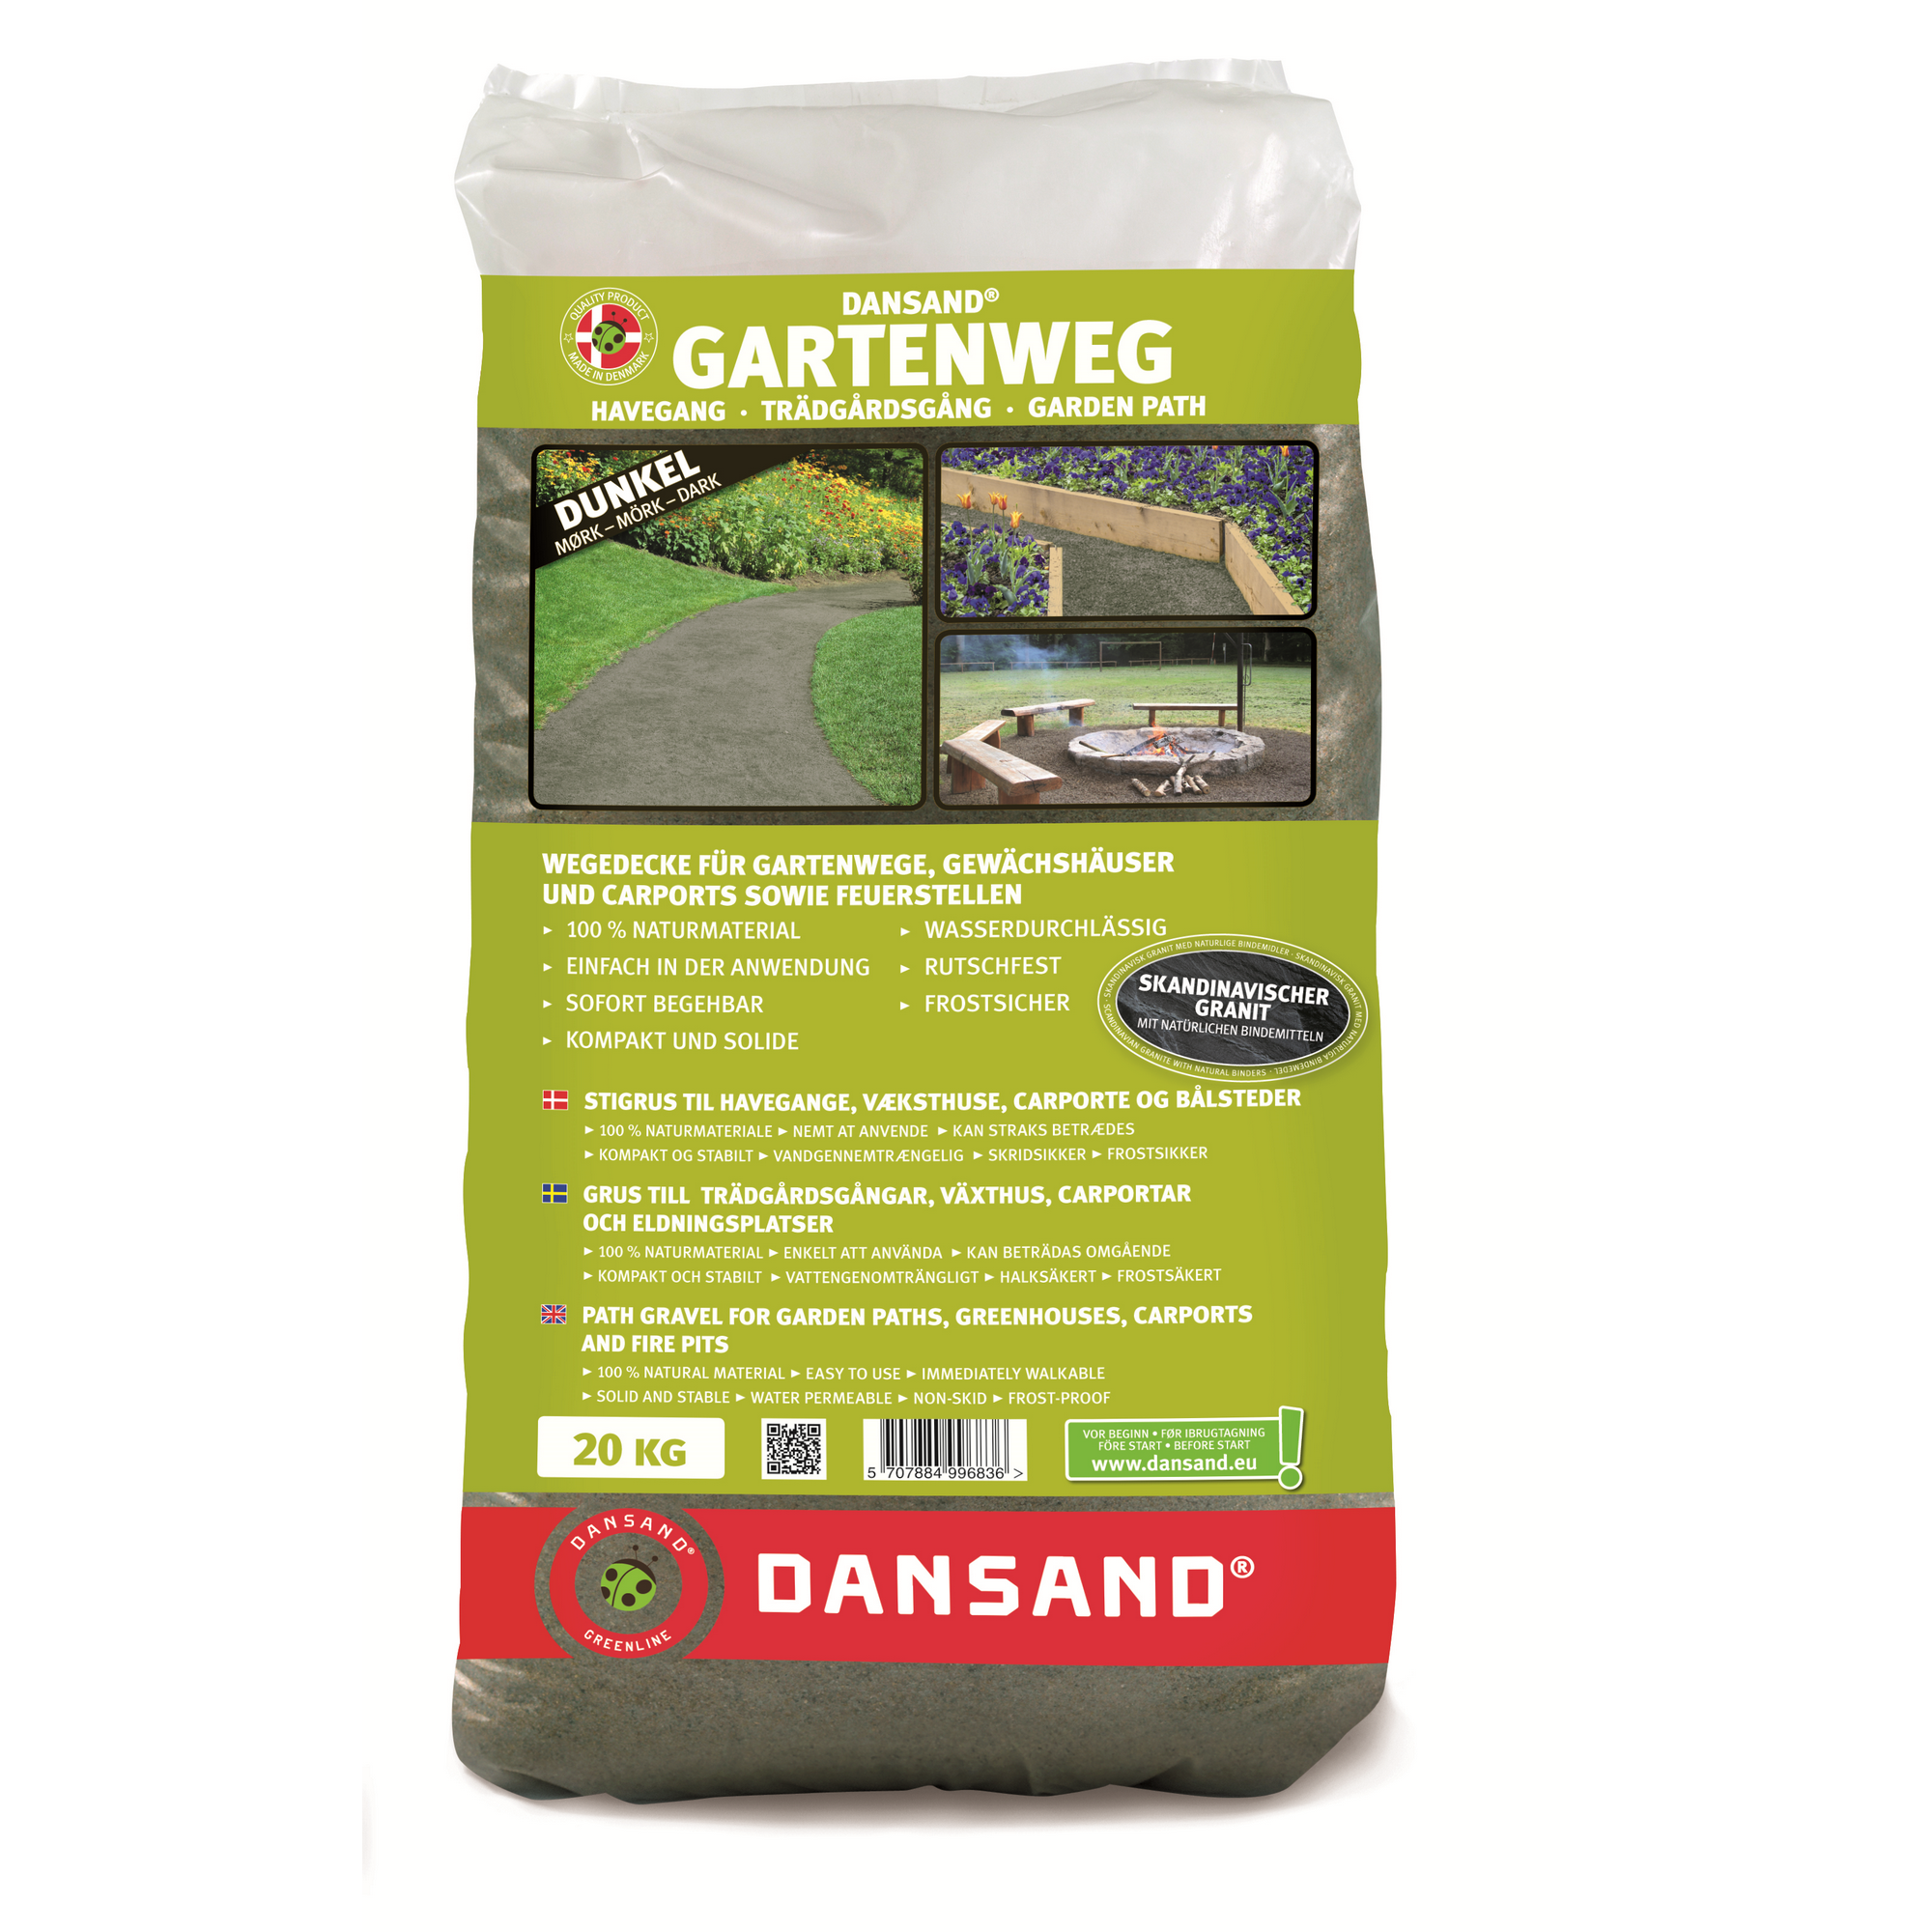 Wegedecke für Gartenweg dunkelgrau 0-5 mm 20 kg + product picture